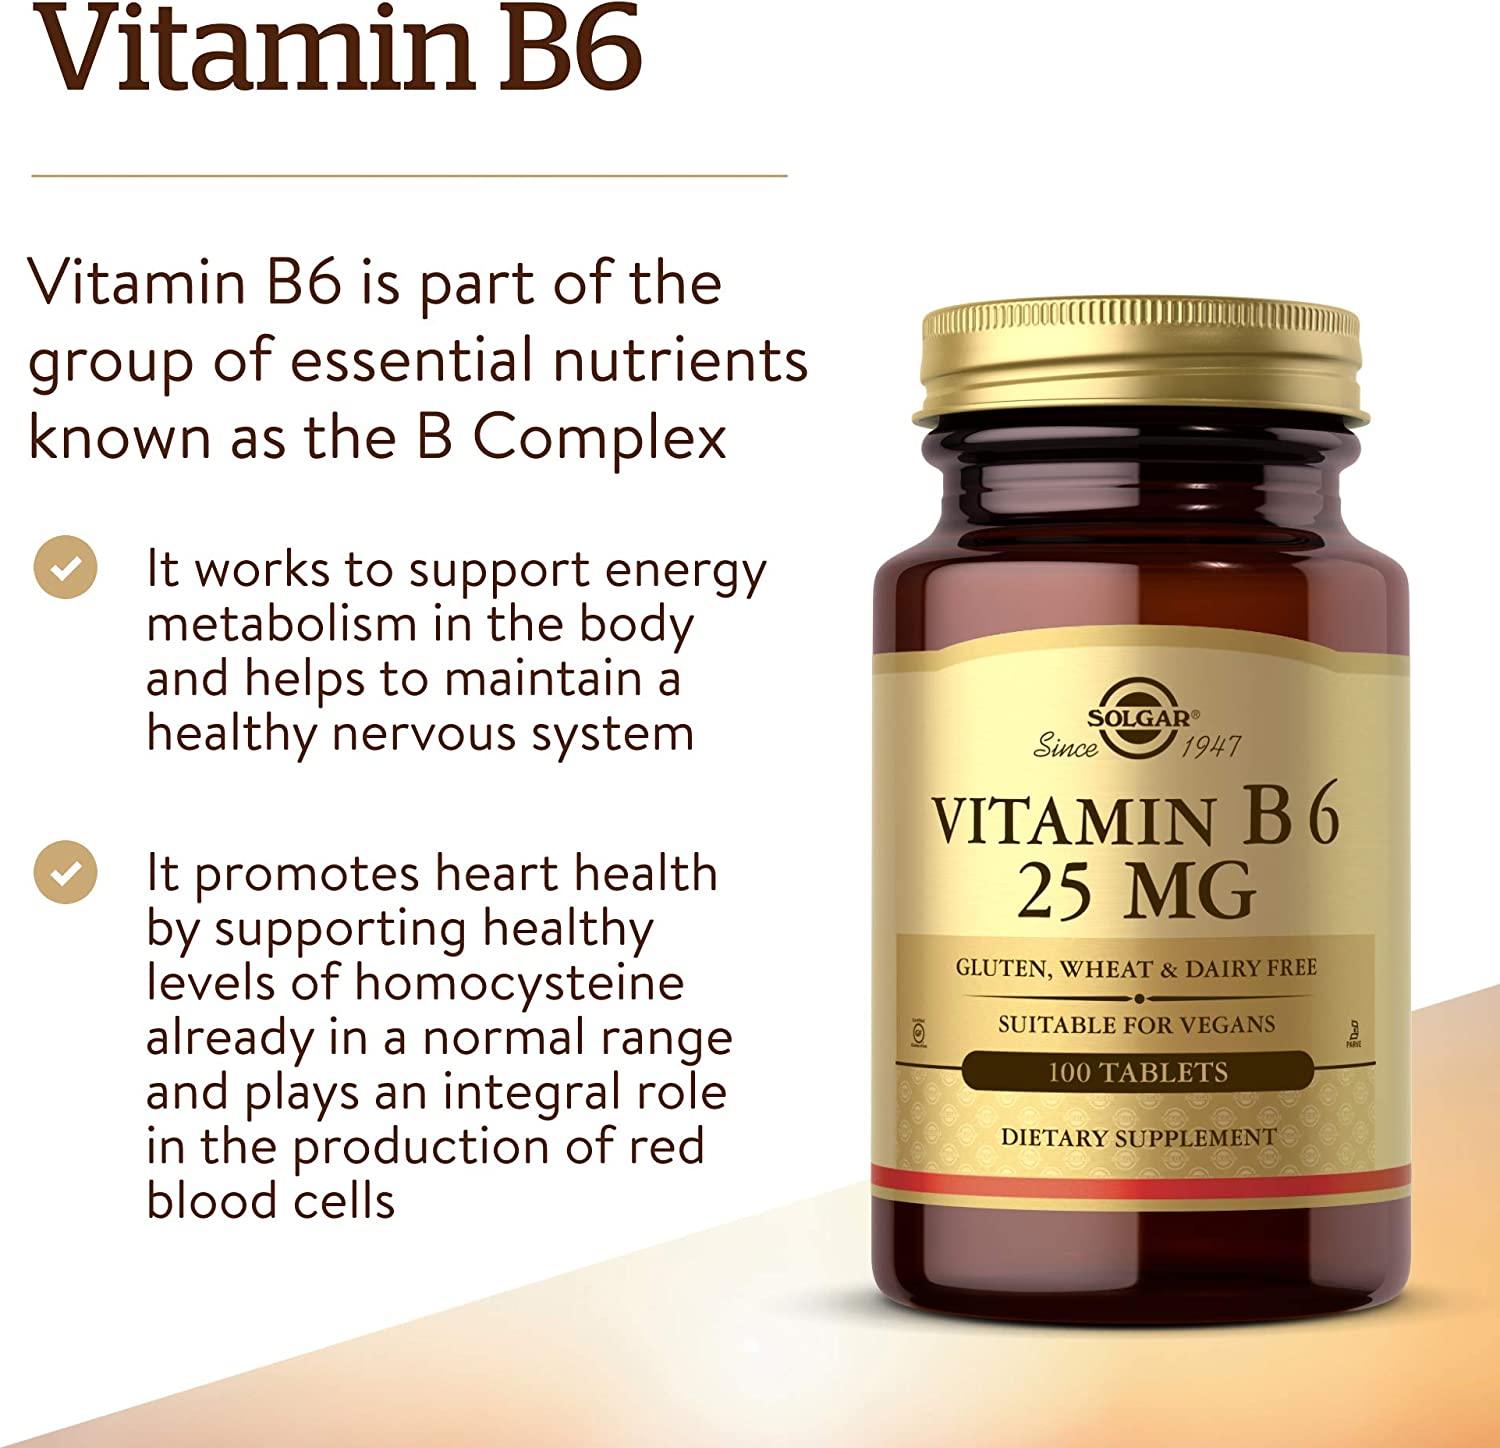 Solgar Vitamine B6 25mg - mondialpharma.com